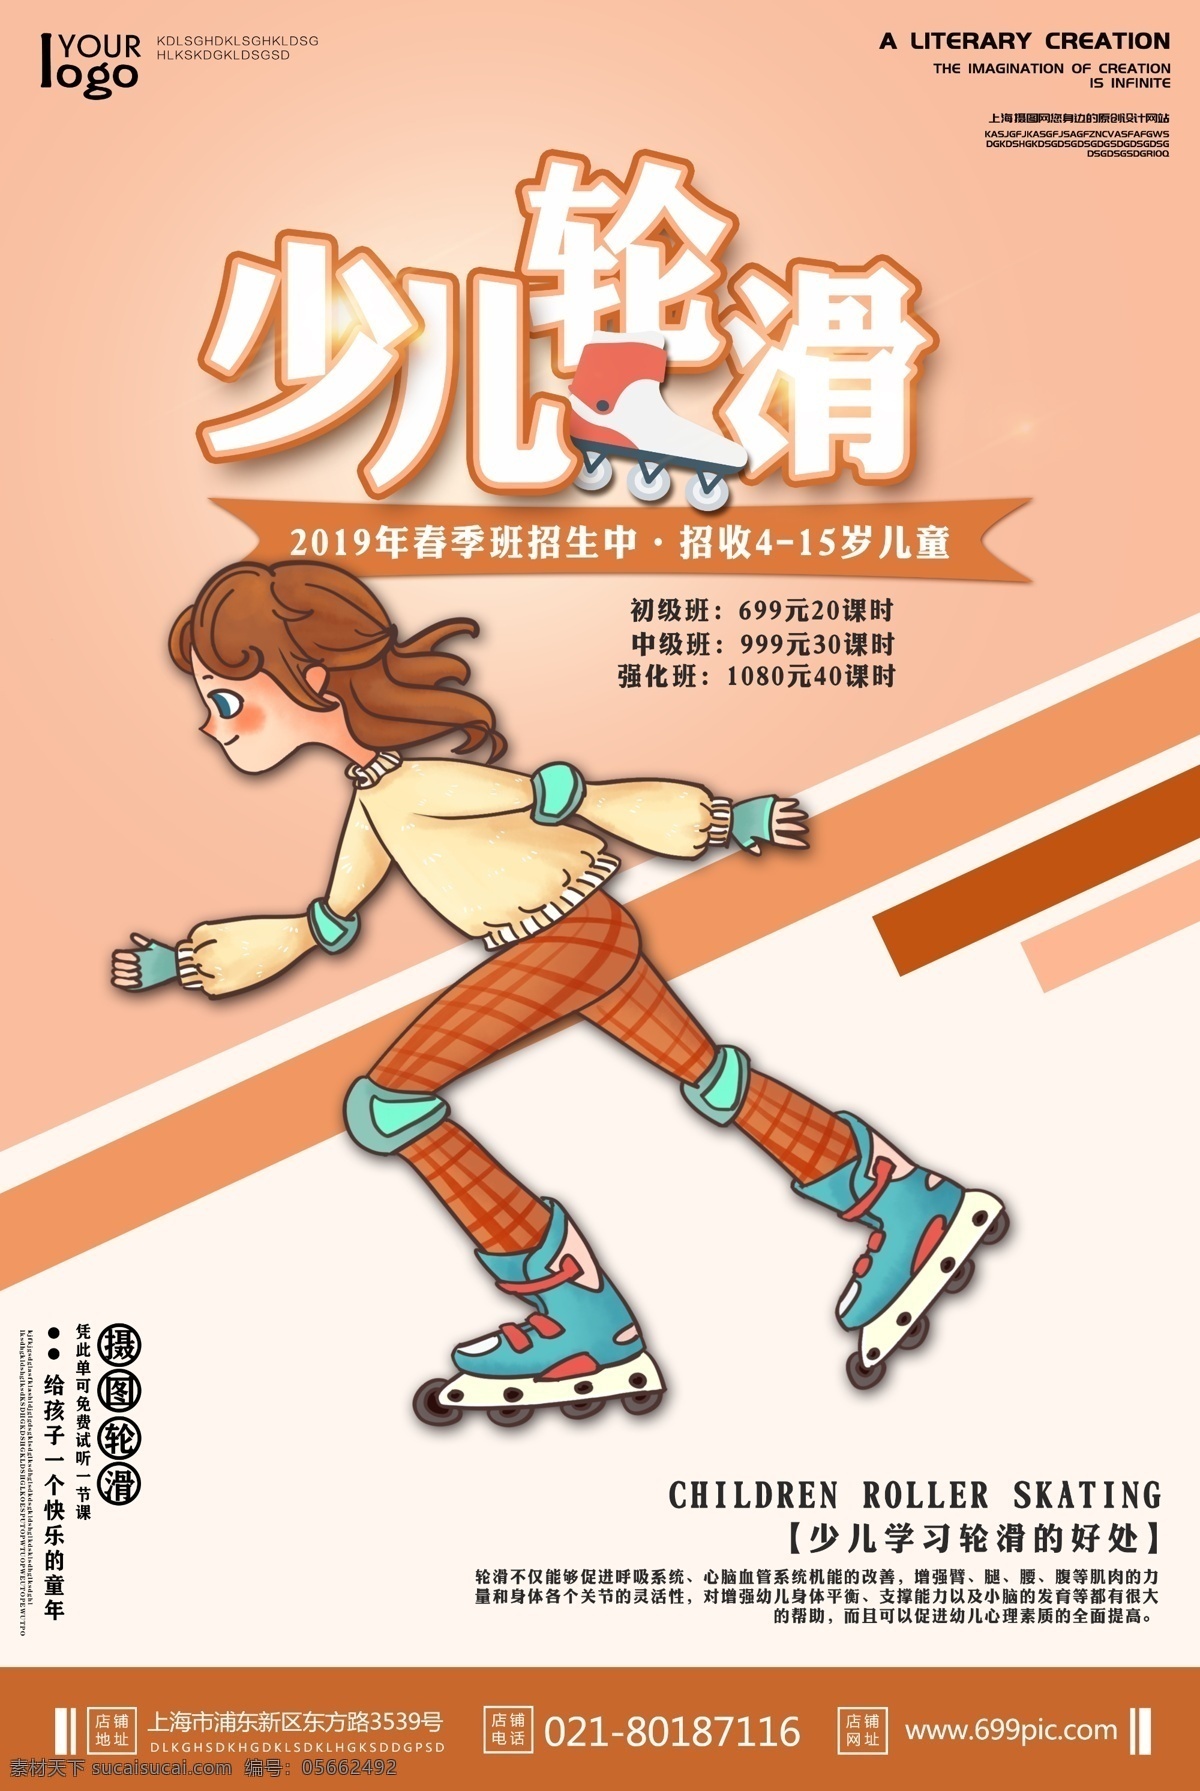 少儿轮滑海报 儿童轮滑 轮滑课 轮滑学习 轮滑班招生 运动健身海报 儿童健身海报 卡通 人物 滑冰 海报 插画 轮滑 轮滑女孩